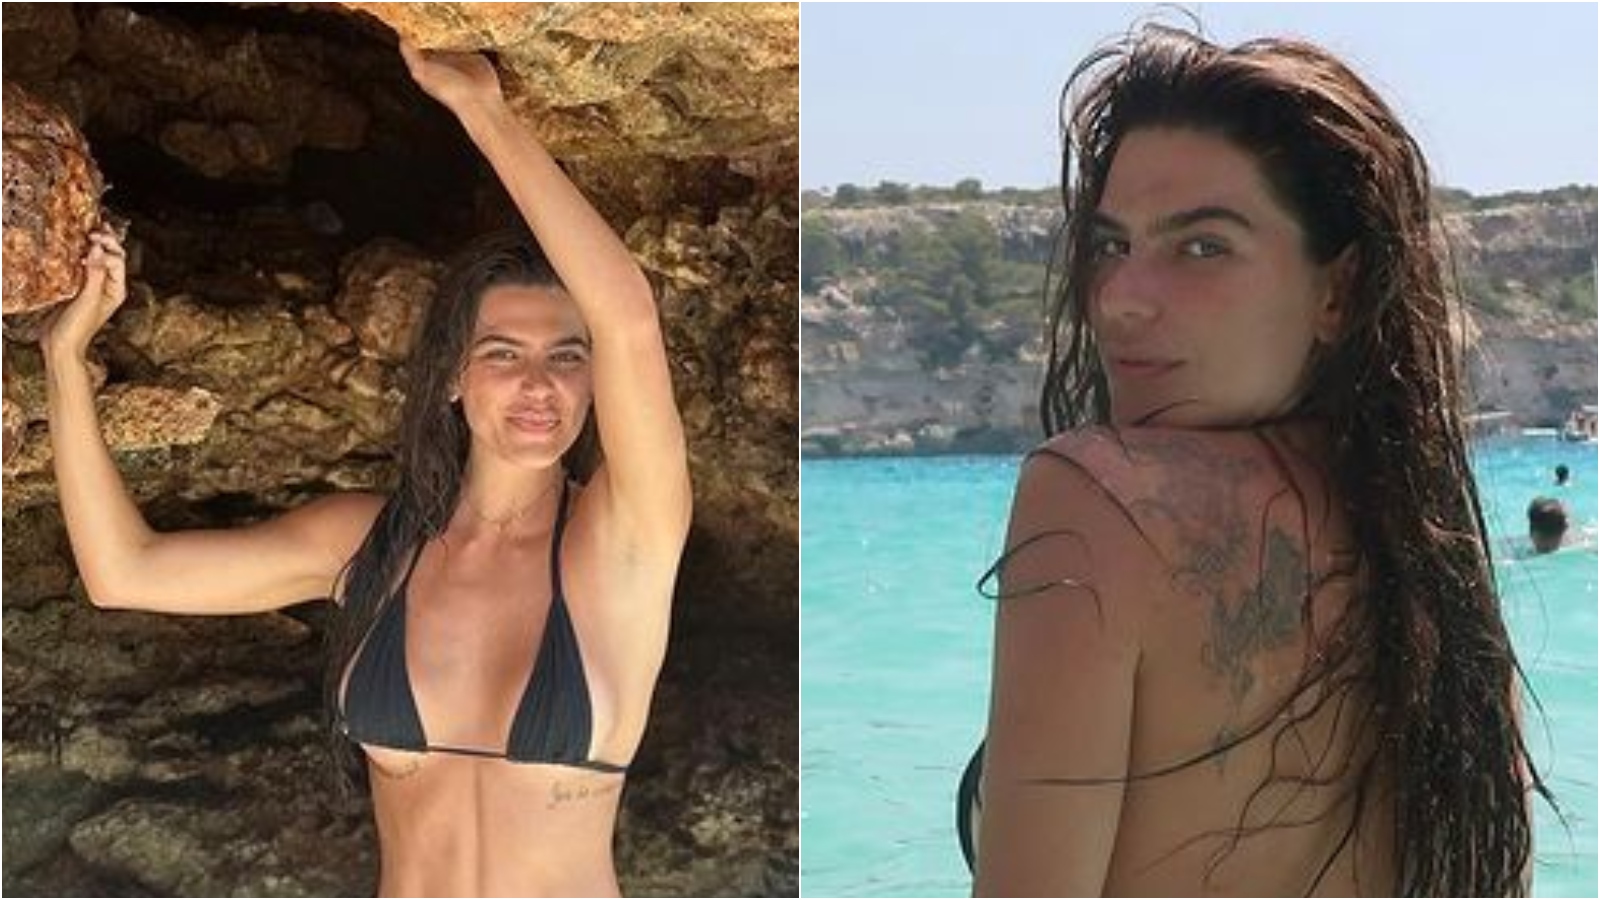 Mariana Goldfarb faz topless em cliques na Espanha e arranca suspiros: ‘Espetacular’